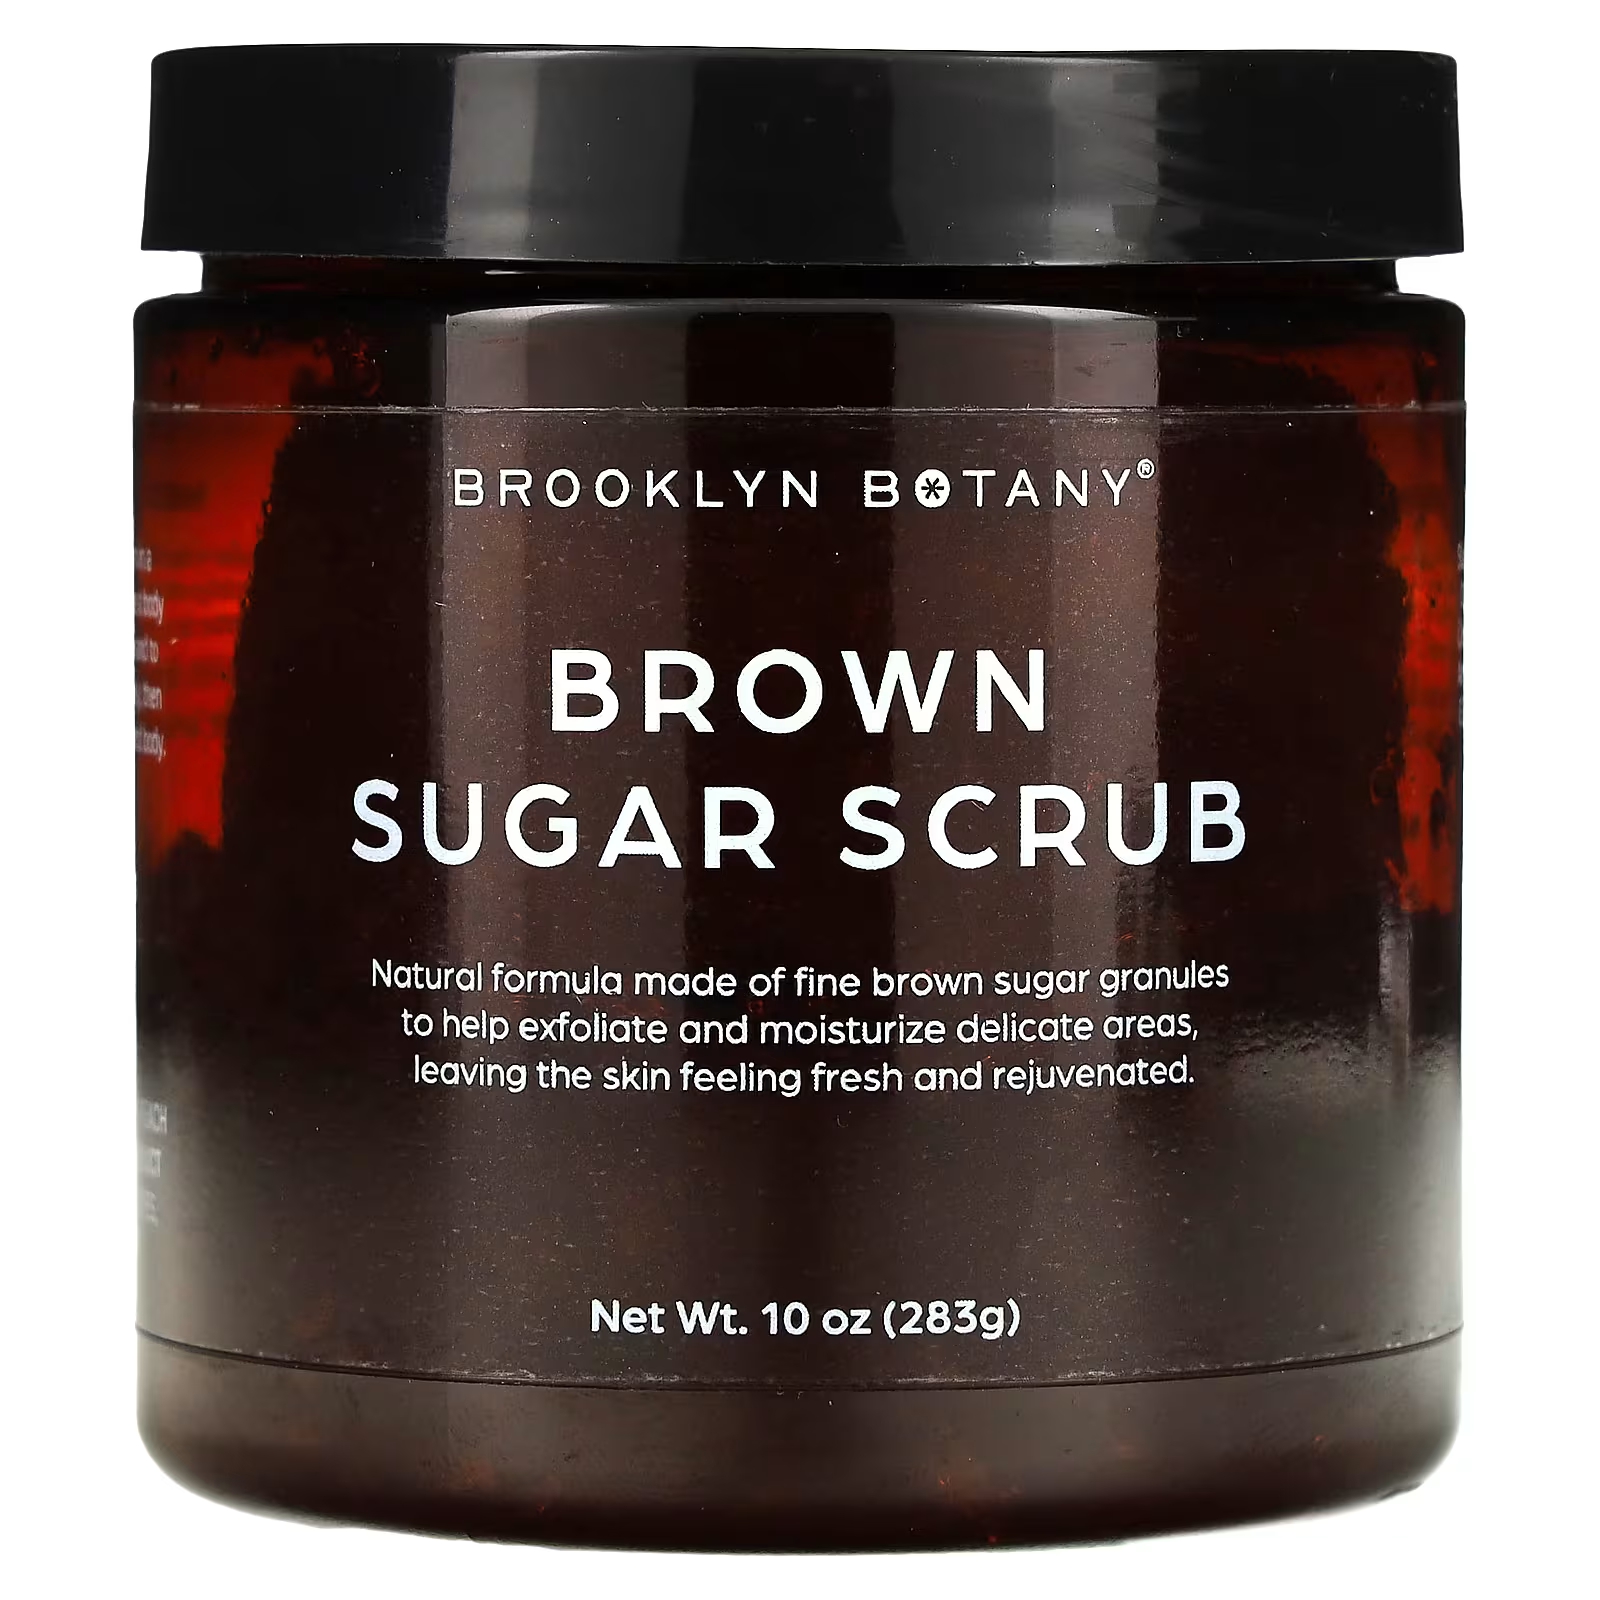 Скраб с коричневым сахаром Brooklyn Botany для всех типов кожи, 283 г brooklyn botany brown sugar scrub 10 oz 283 g